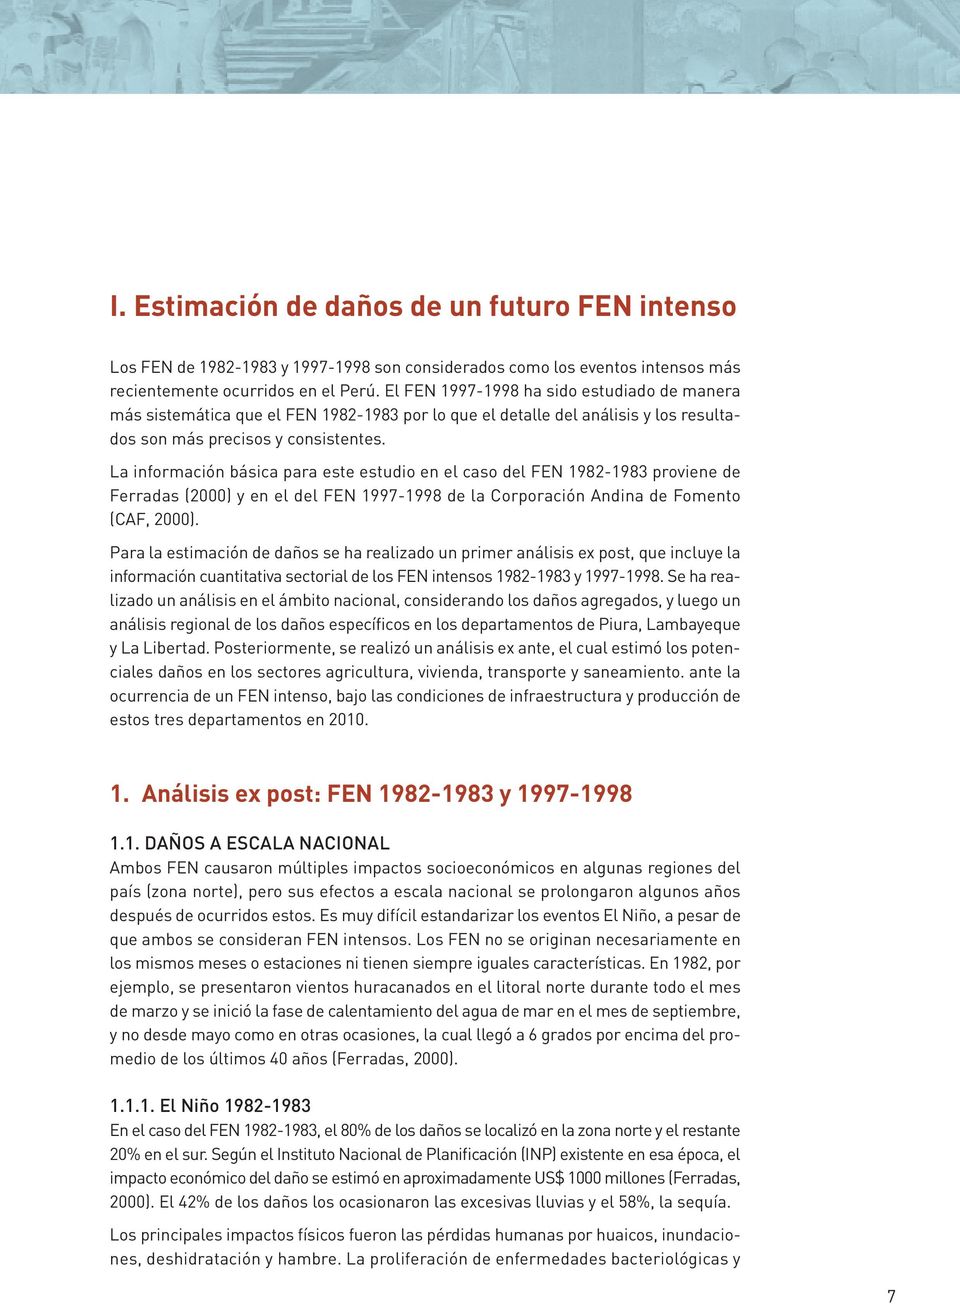 La información básica para este estudio en el caso del FEN 1982-1983 proviene de Ferradas (2000) y en el del FEN 1997-1998 de la Corporación Andina de Fomento (CAF, 2000).